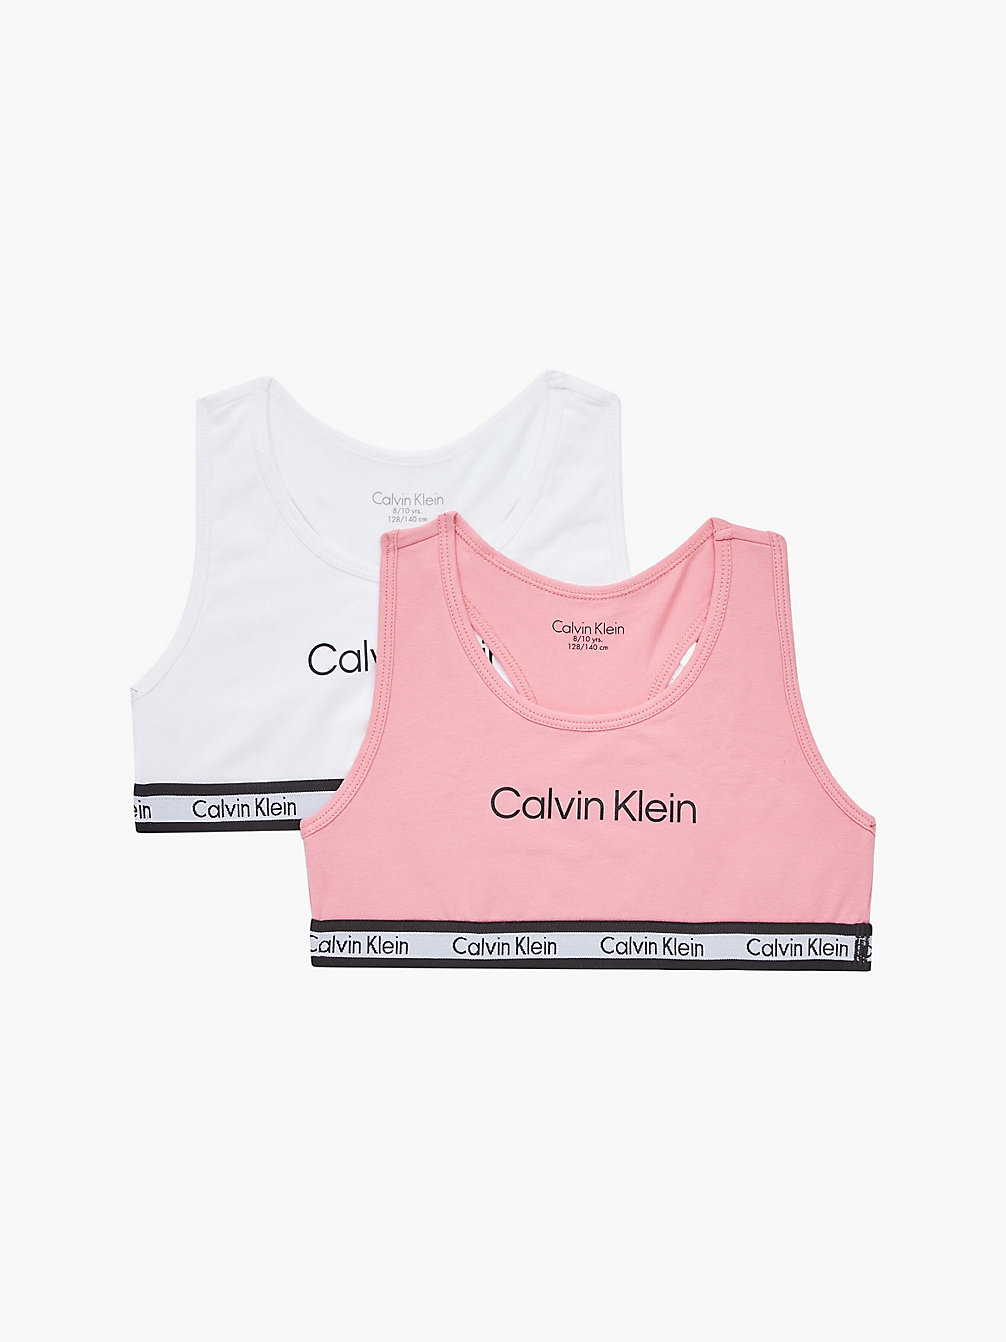 ROSEYPINK/PVHWHITE > 2er-Pack Bralettes Für Mädchen – Modern Cotton > undefined girls - Calvin Klein